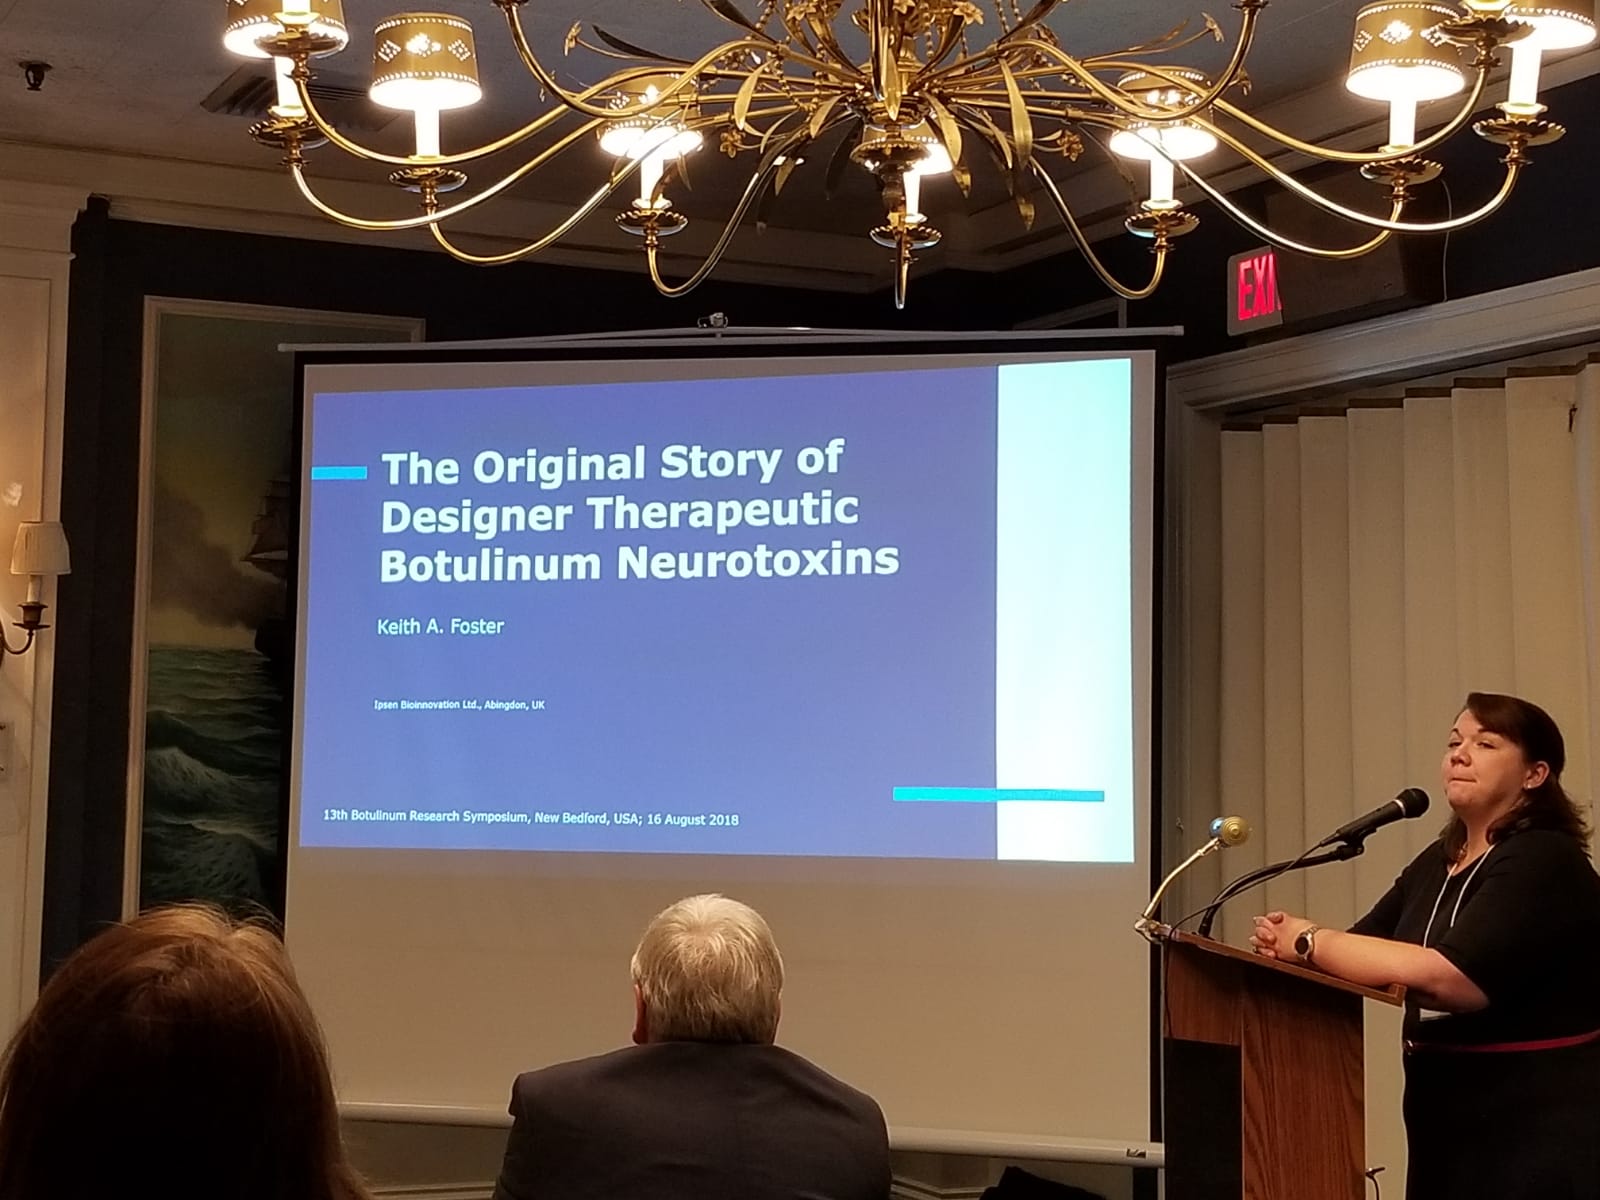 12th Annual Botulinum Research Symposium, August 15-17, 2018